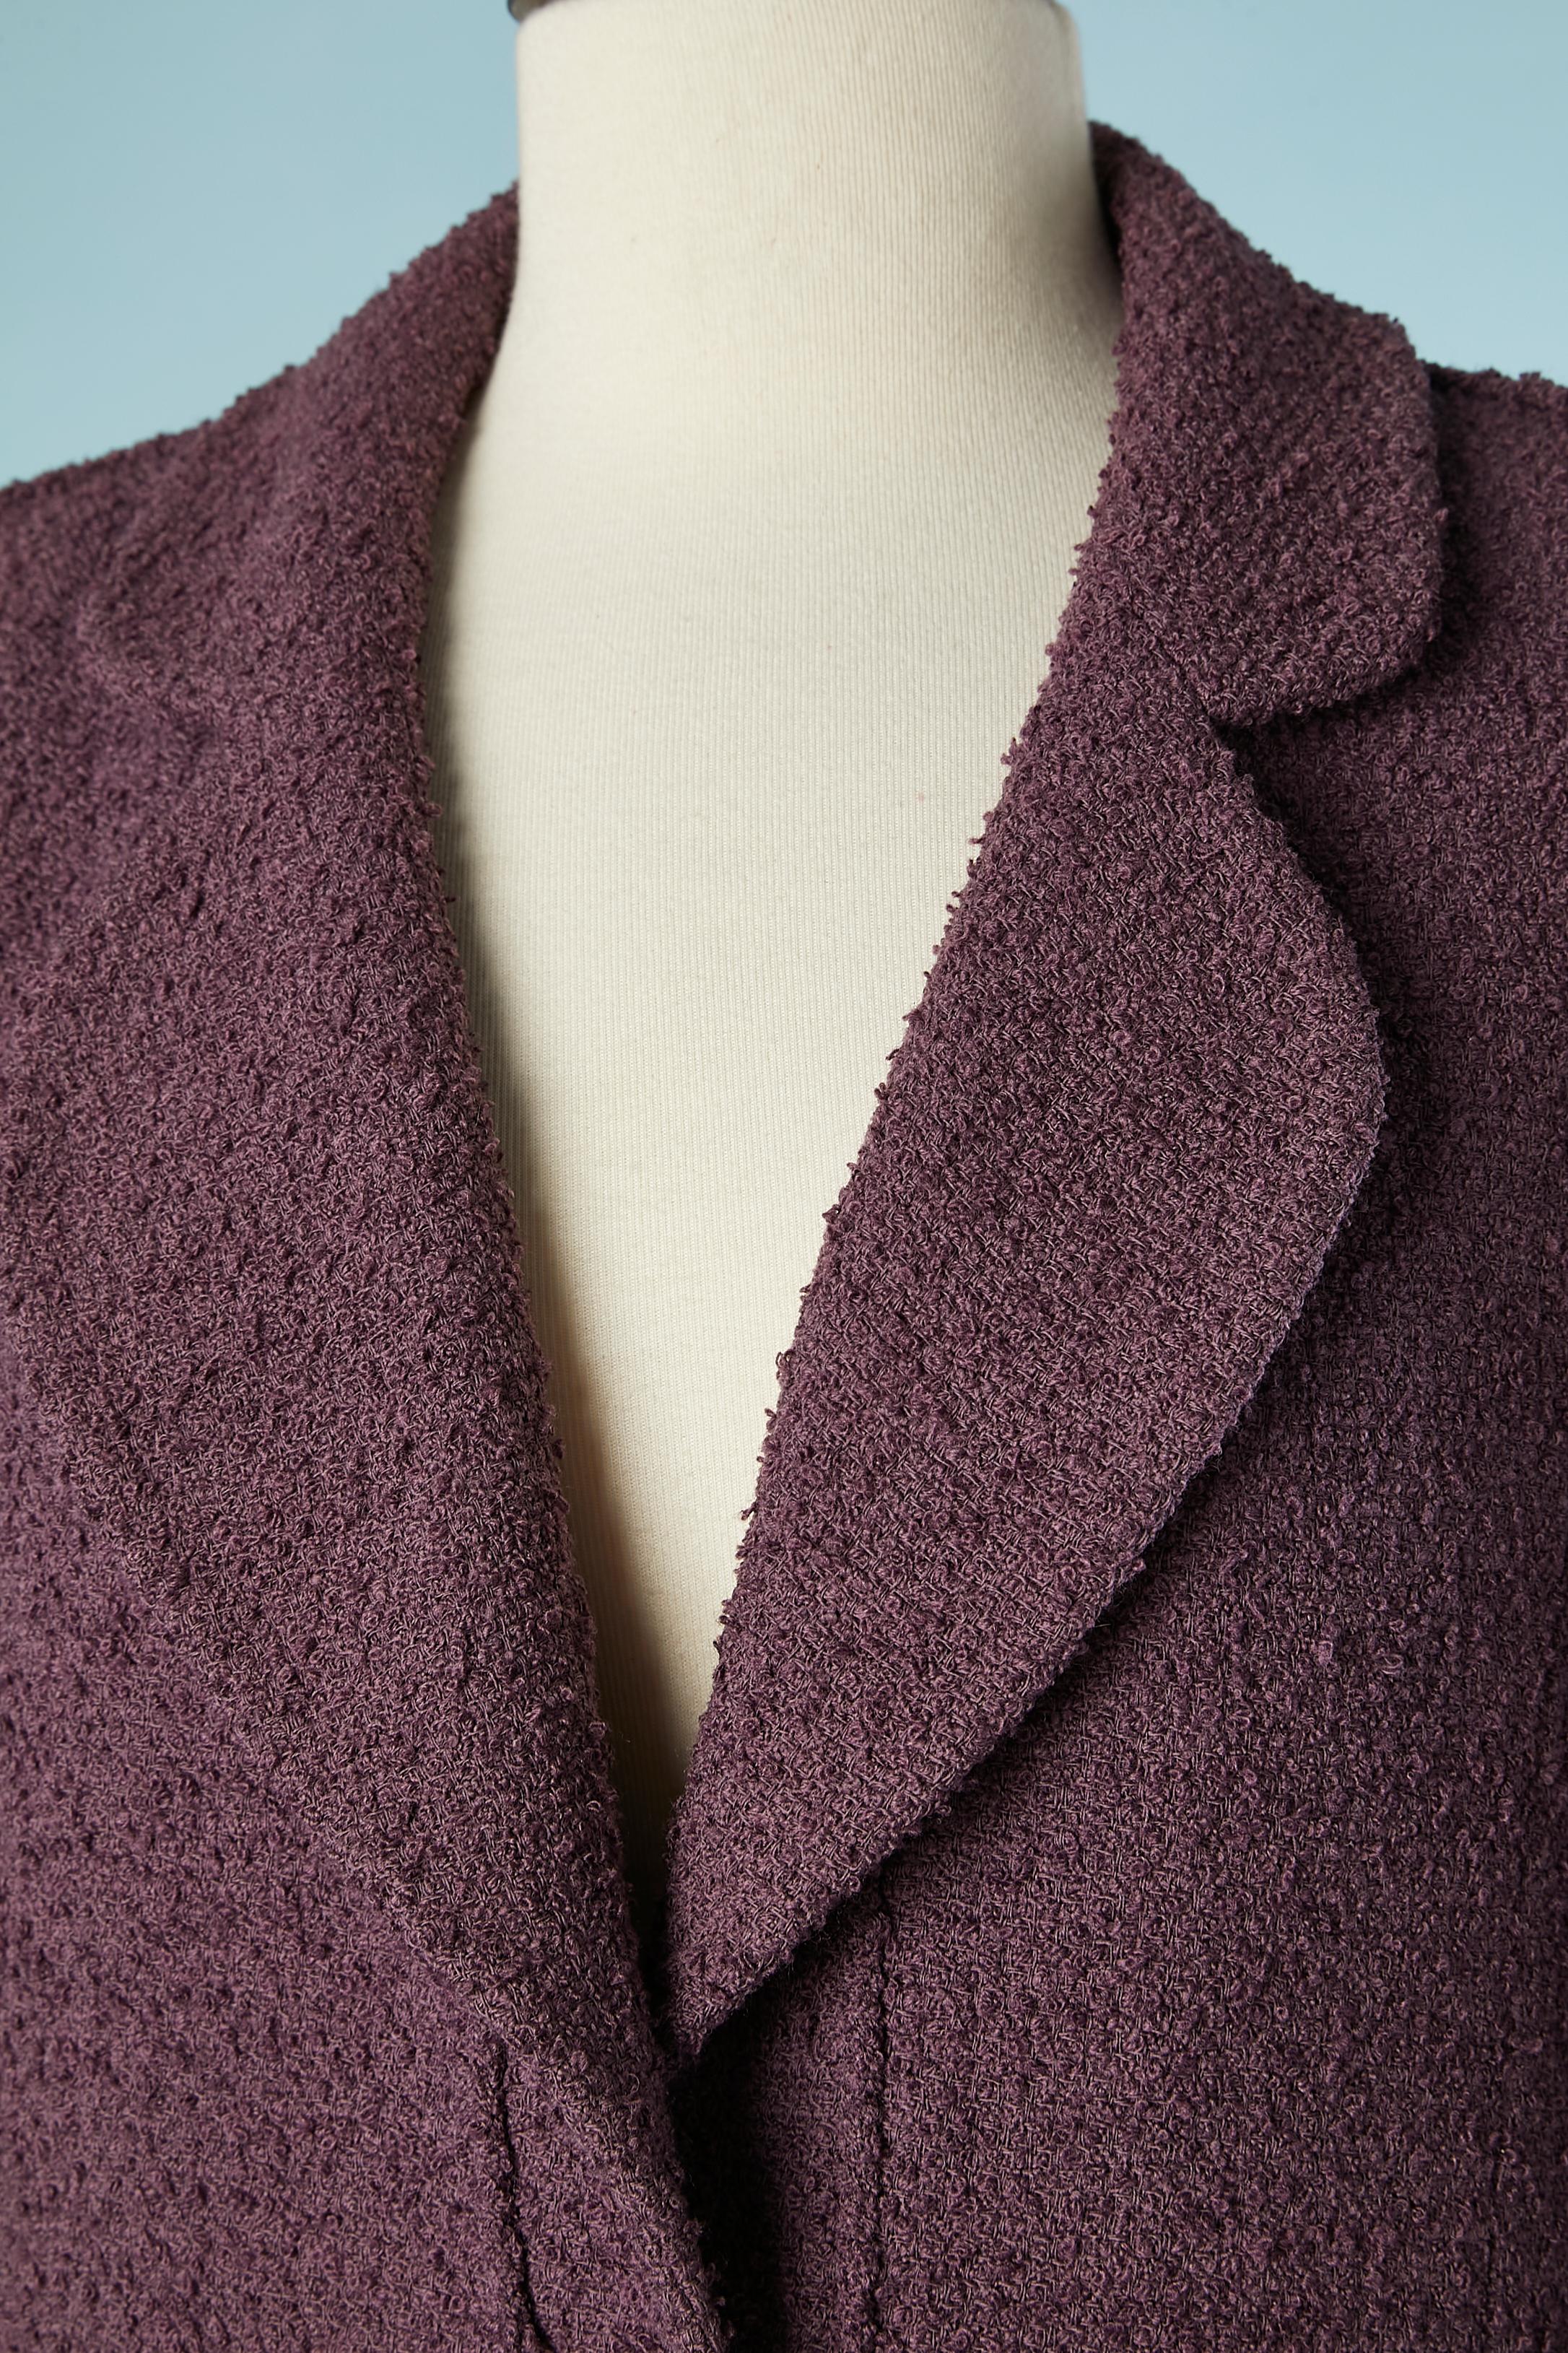 Veste en tweed violet à simple boutonnage. Bouton de marque. Travail de coupe sur les manches. Pad d'épaule. Doublure en soie.
TAILLE L ( pas d'étiquette de taille, ni de composition du tissu)
